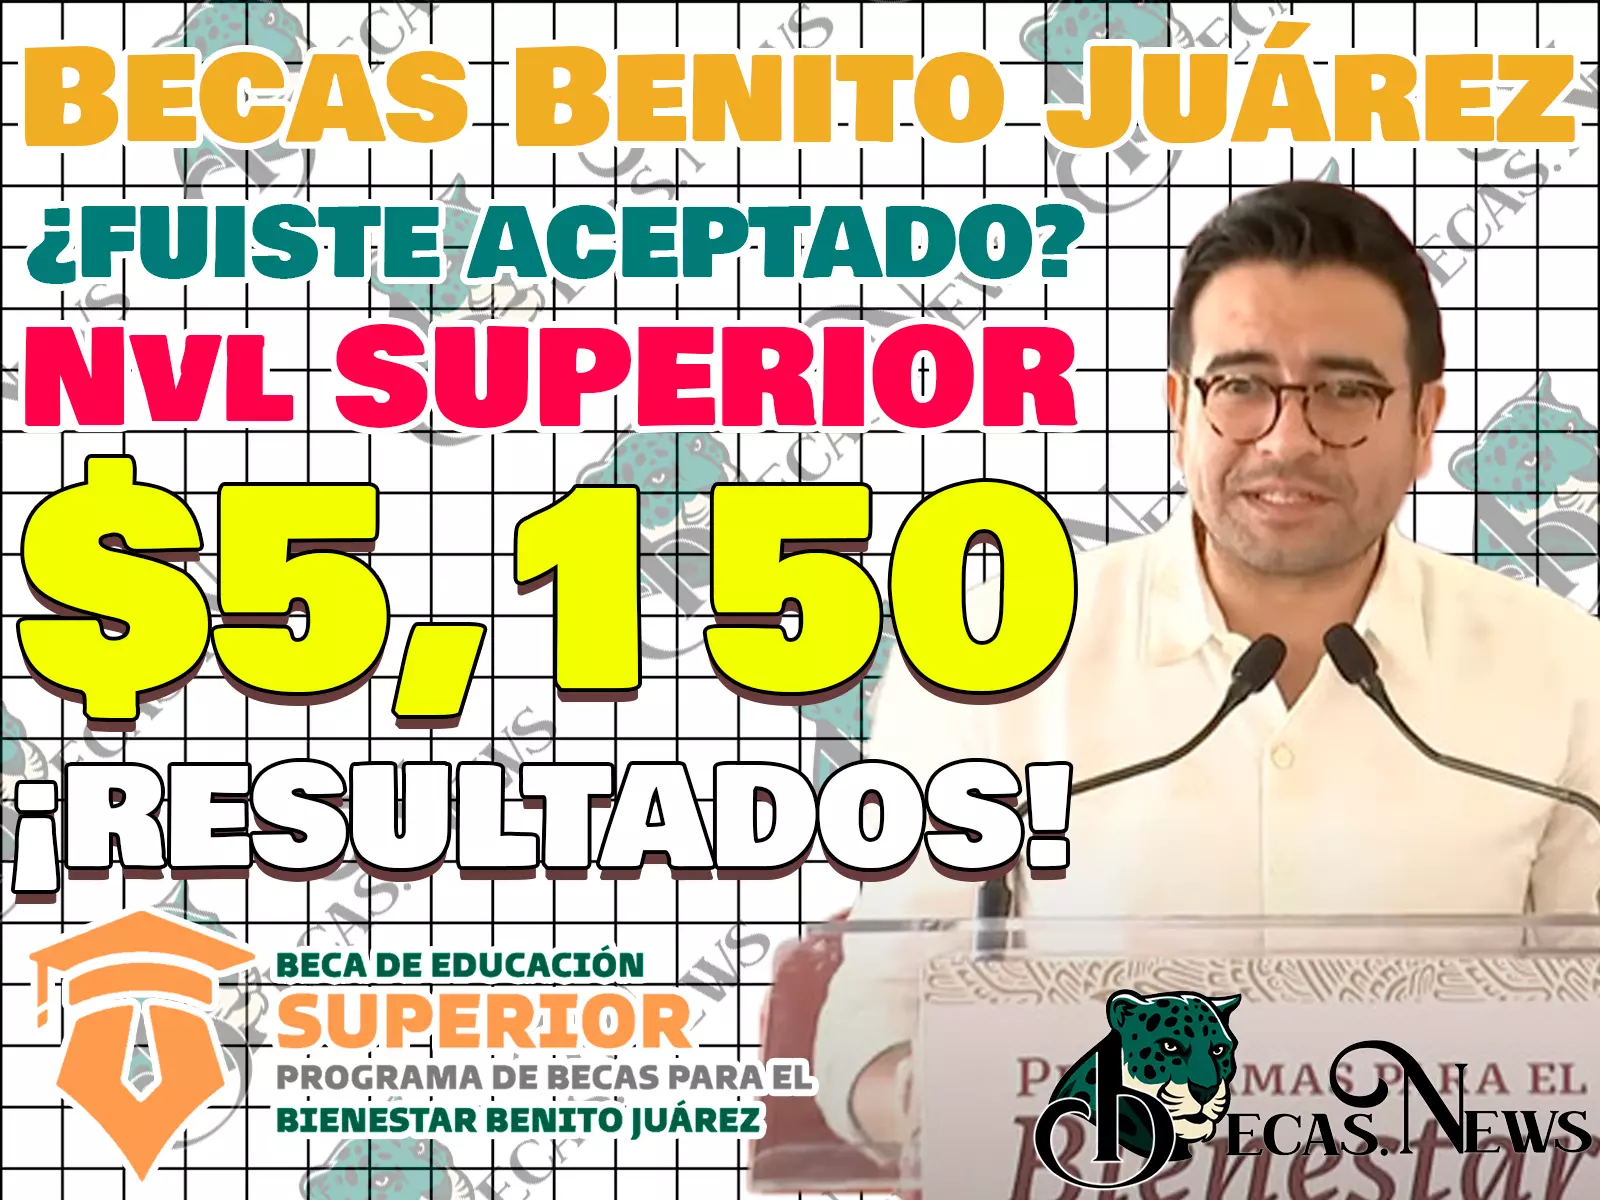 Publicación de resultados de aceptación para las Becas Benito Juárez del Nivel Superior. ¿Fuiste aceptado?